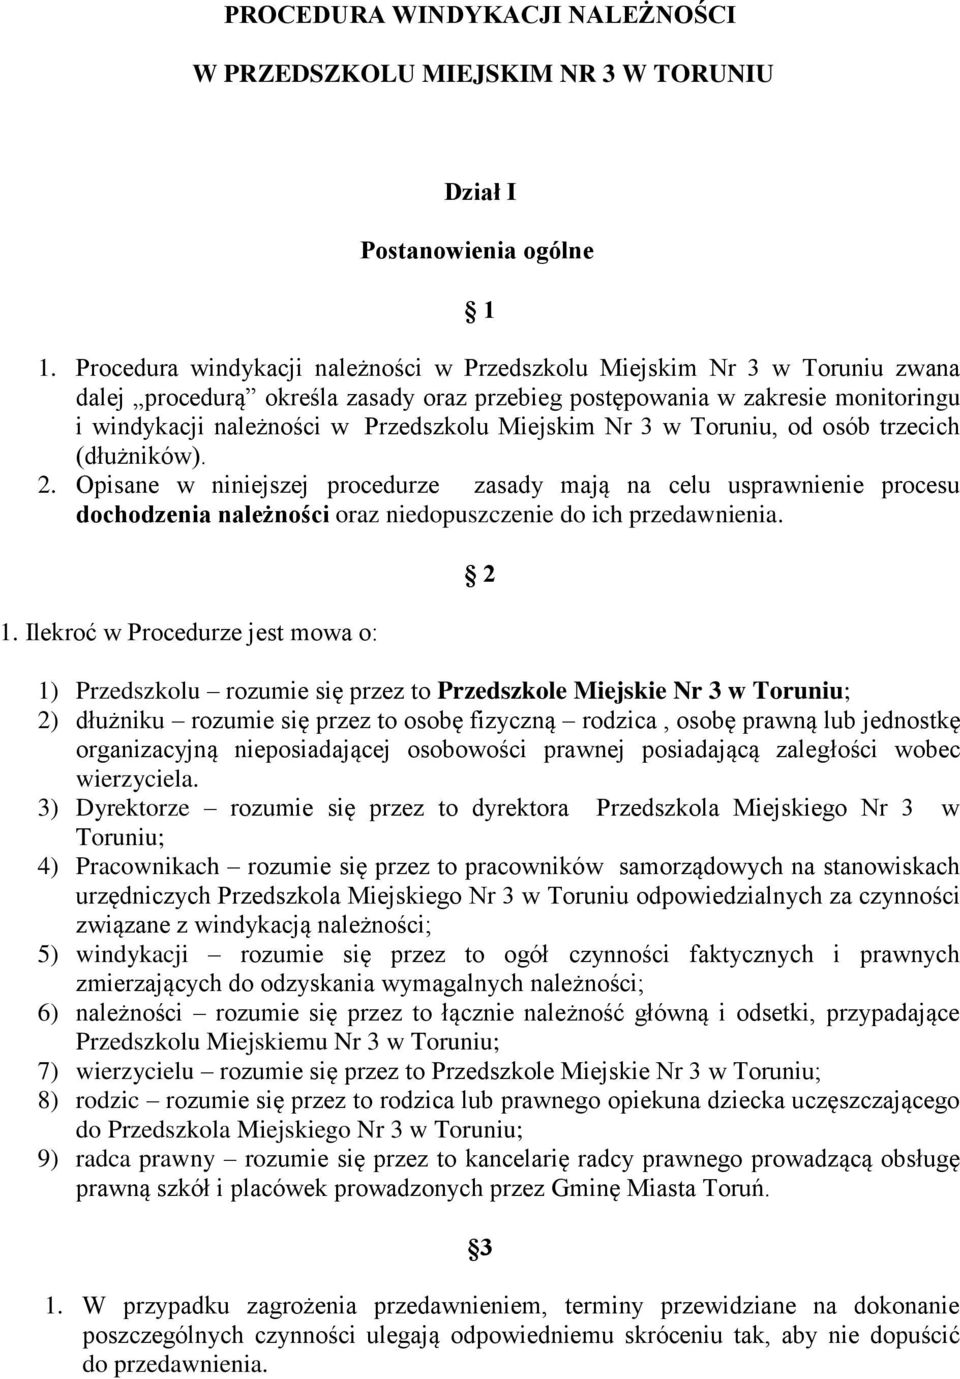 Miejskim Nr 3 w Toruniu, od osób trzecich (dłużników). 2. Opisane w niniejszej procedurze zasady mają na celu usprawnienie procesu dochodzenia należności oraz niedopuszczenie do ich przedawnienia. 1.